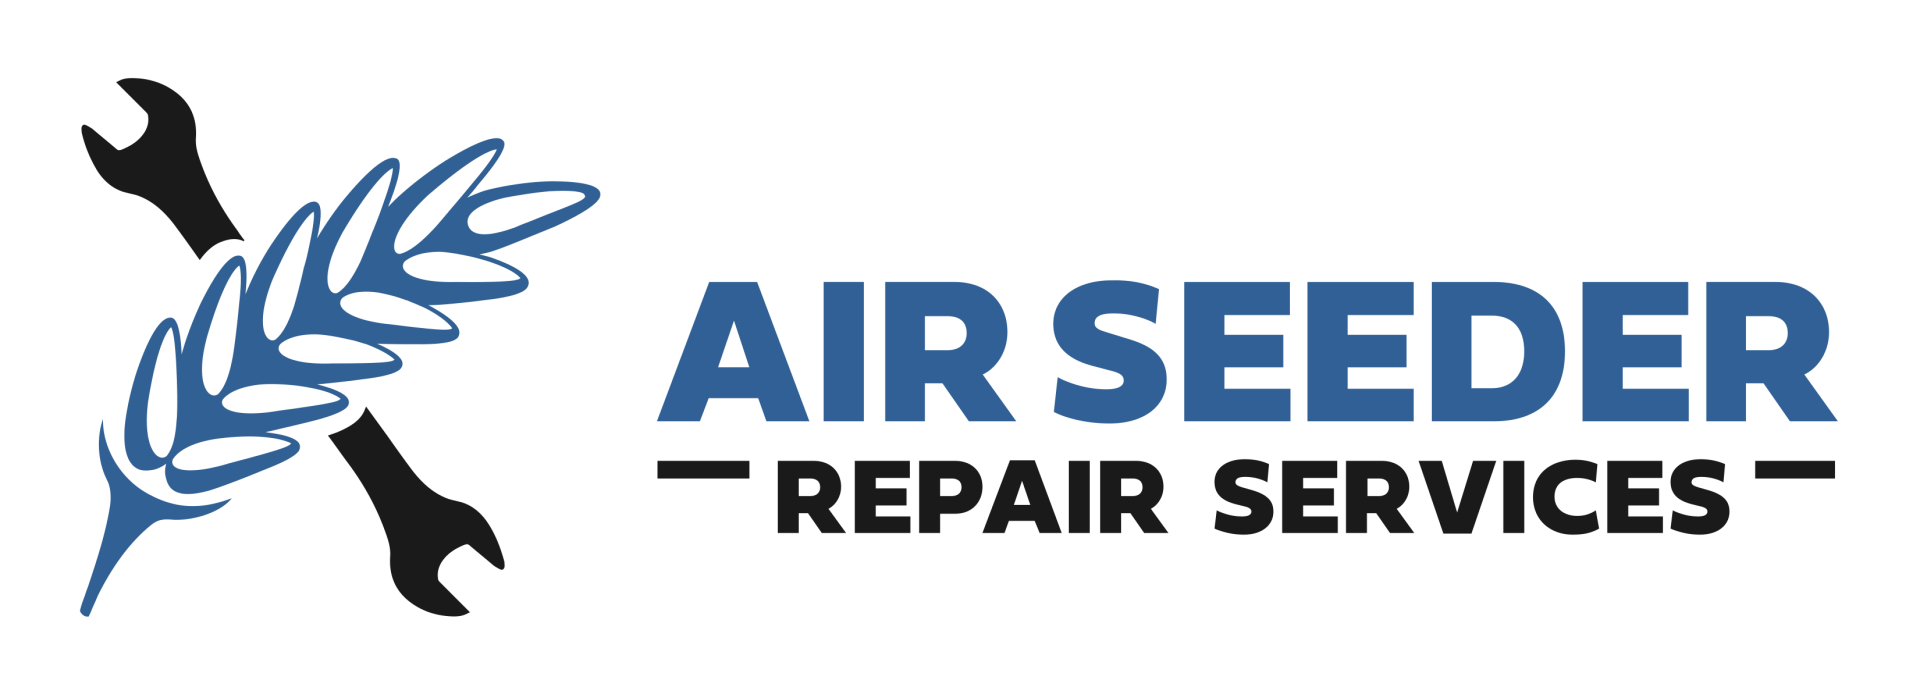 Air Seeder Repair Services Logo